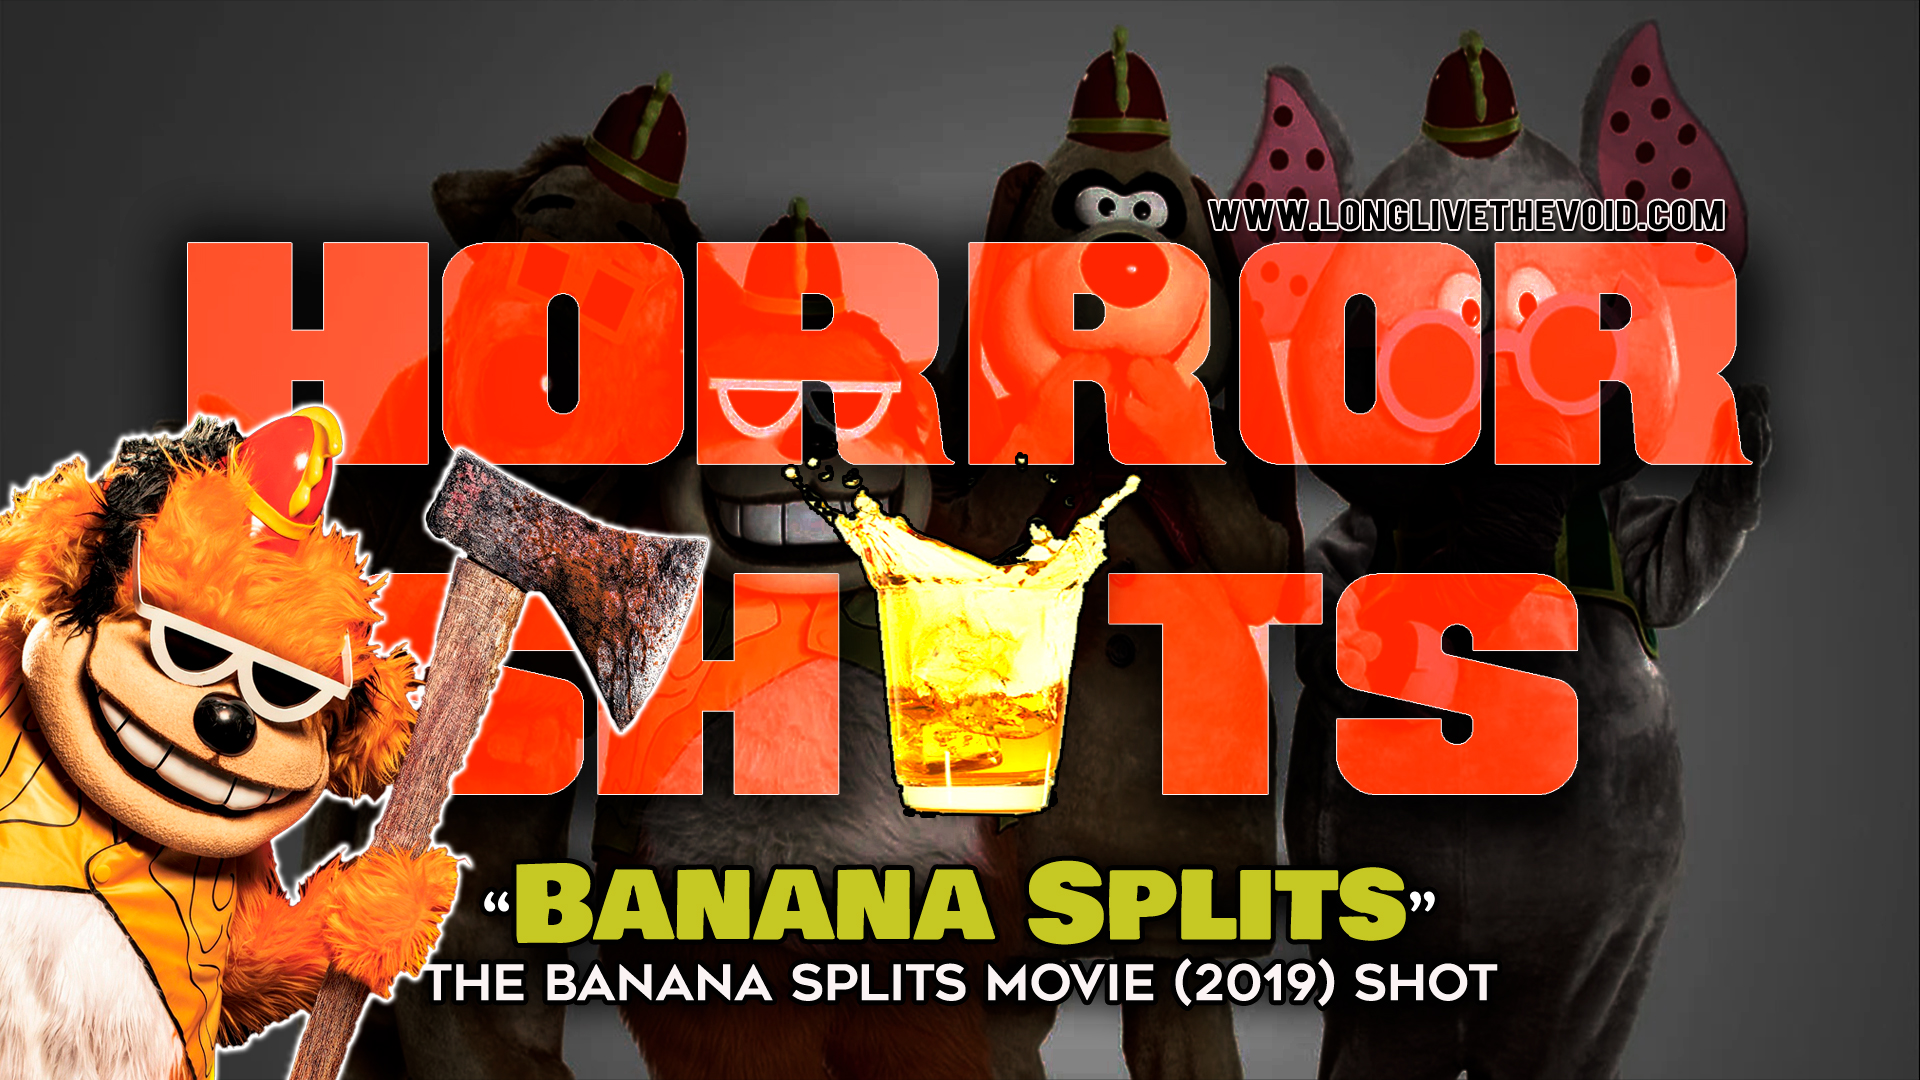 Banana split movie